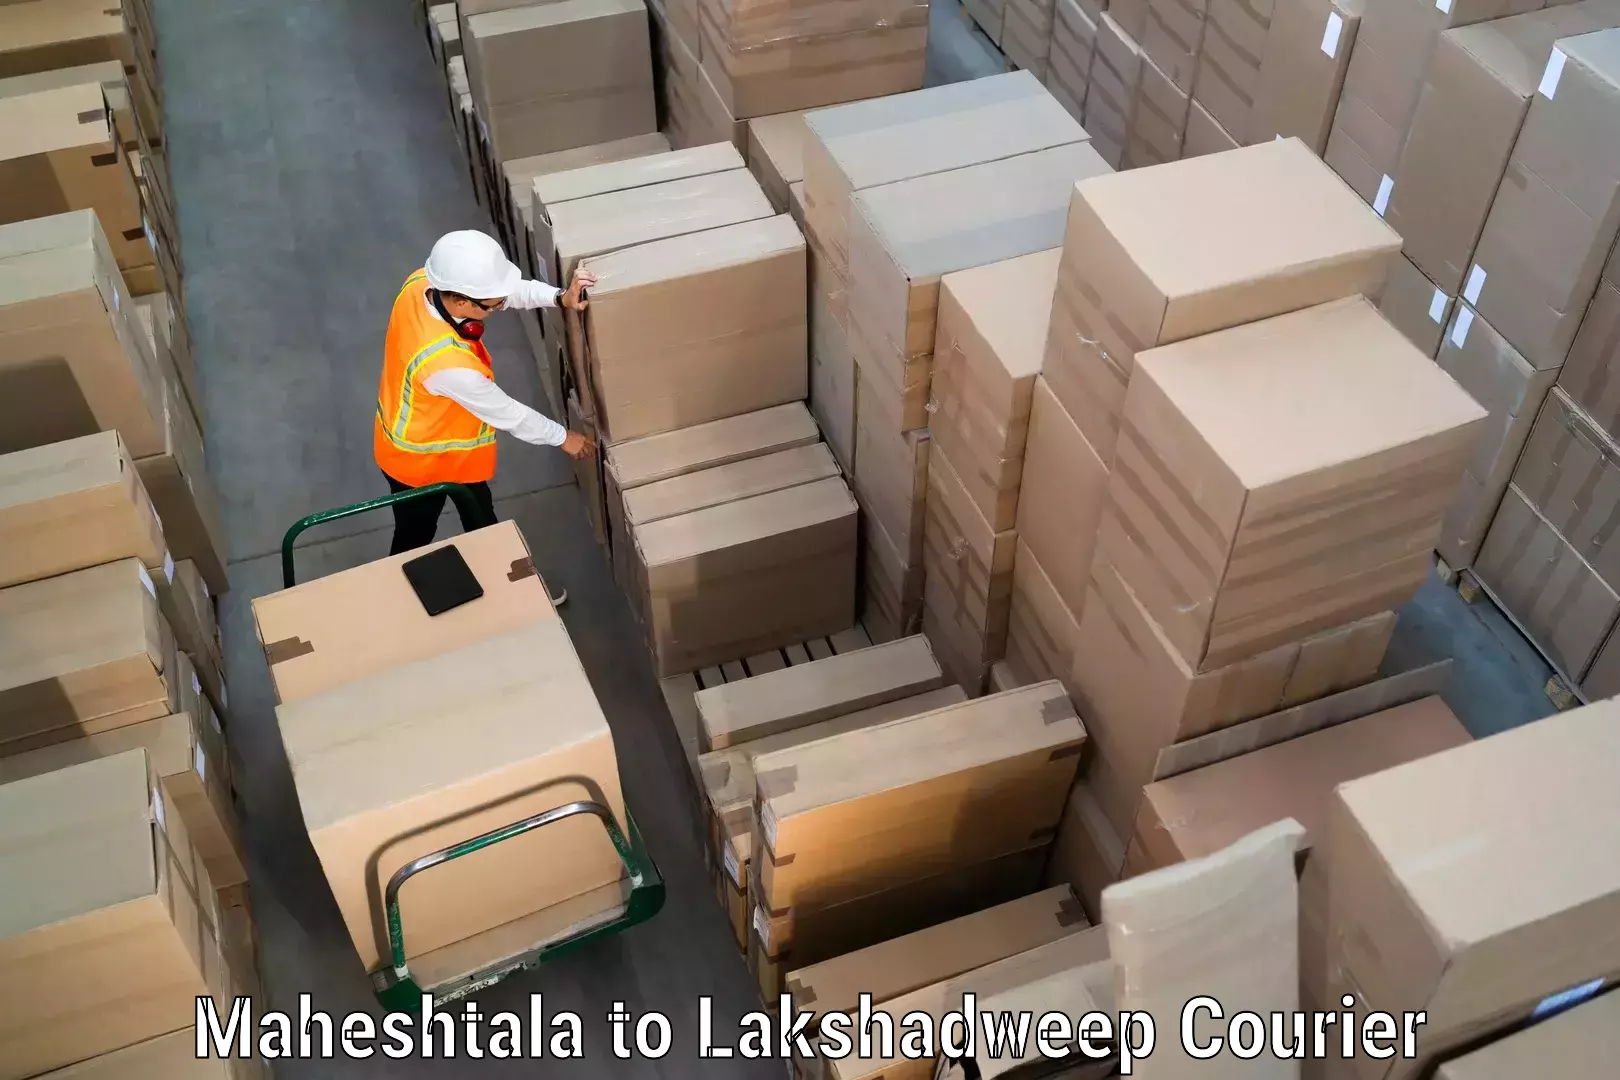 Courier service innovation Maheshtala to Lakshadweep